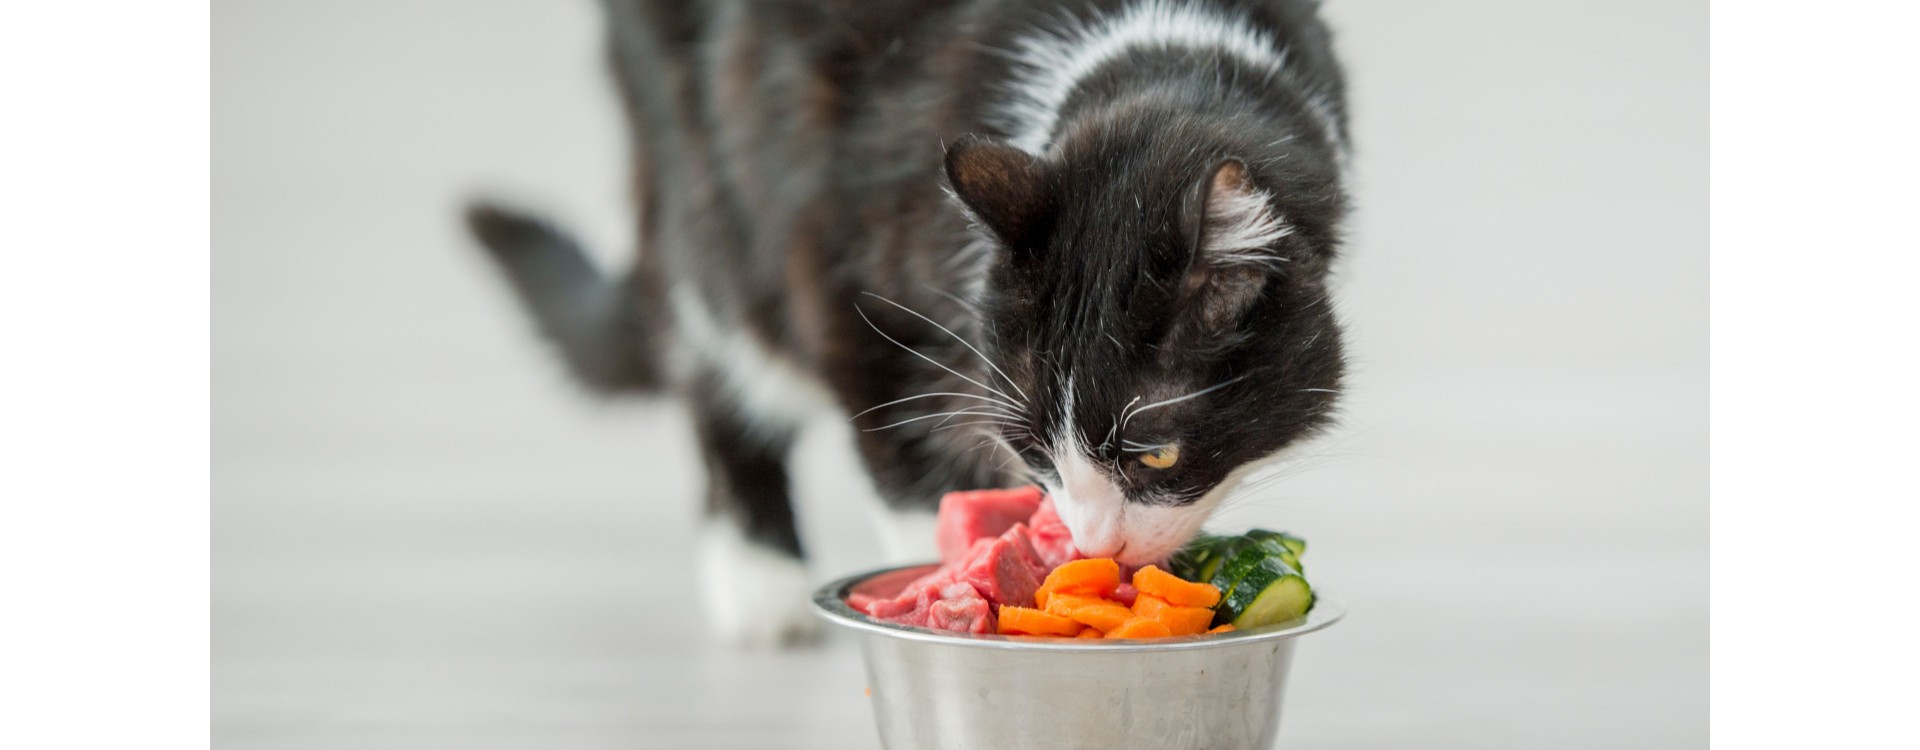 Est-ce- bon de donner de la courgette à votre chat pour l’aider à maigrir ?